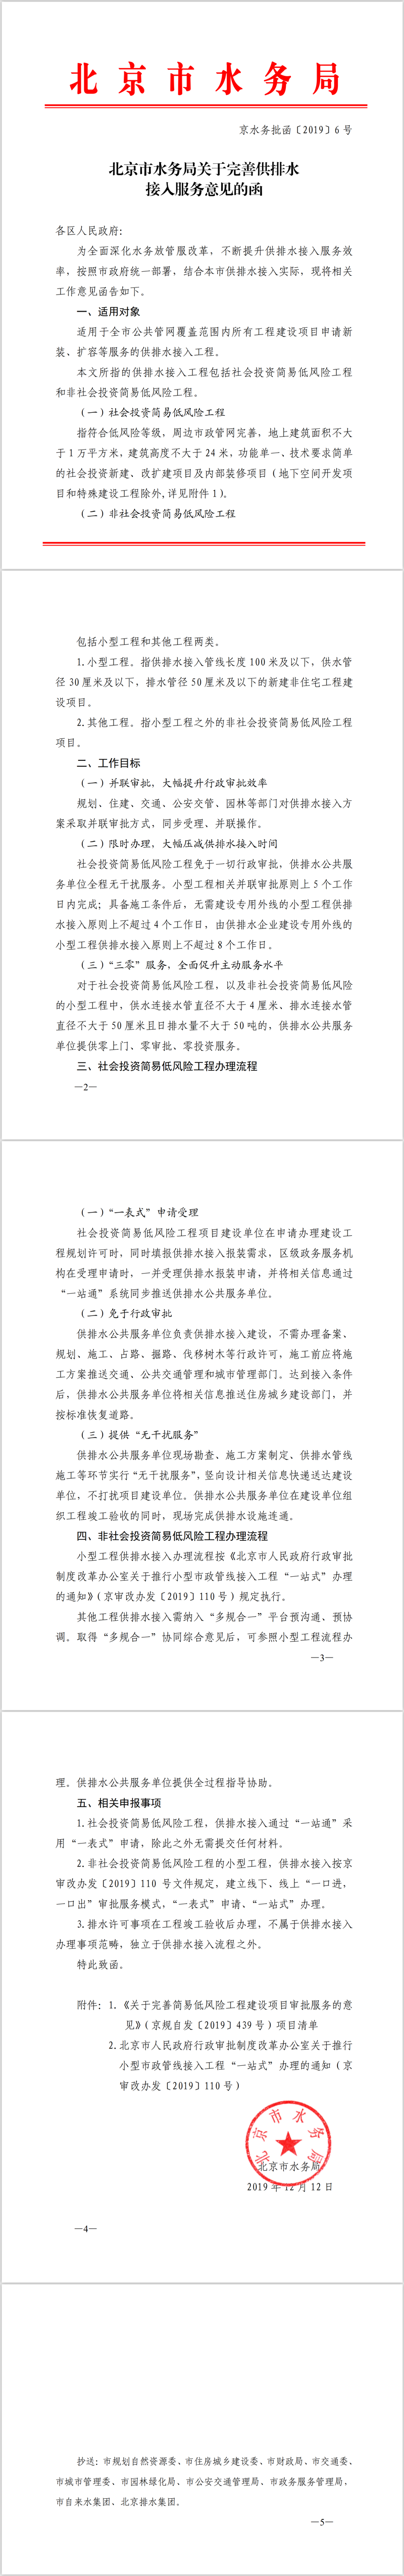 北京市水务局关于完善供排水接入服务意见的函